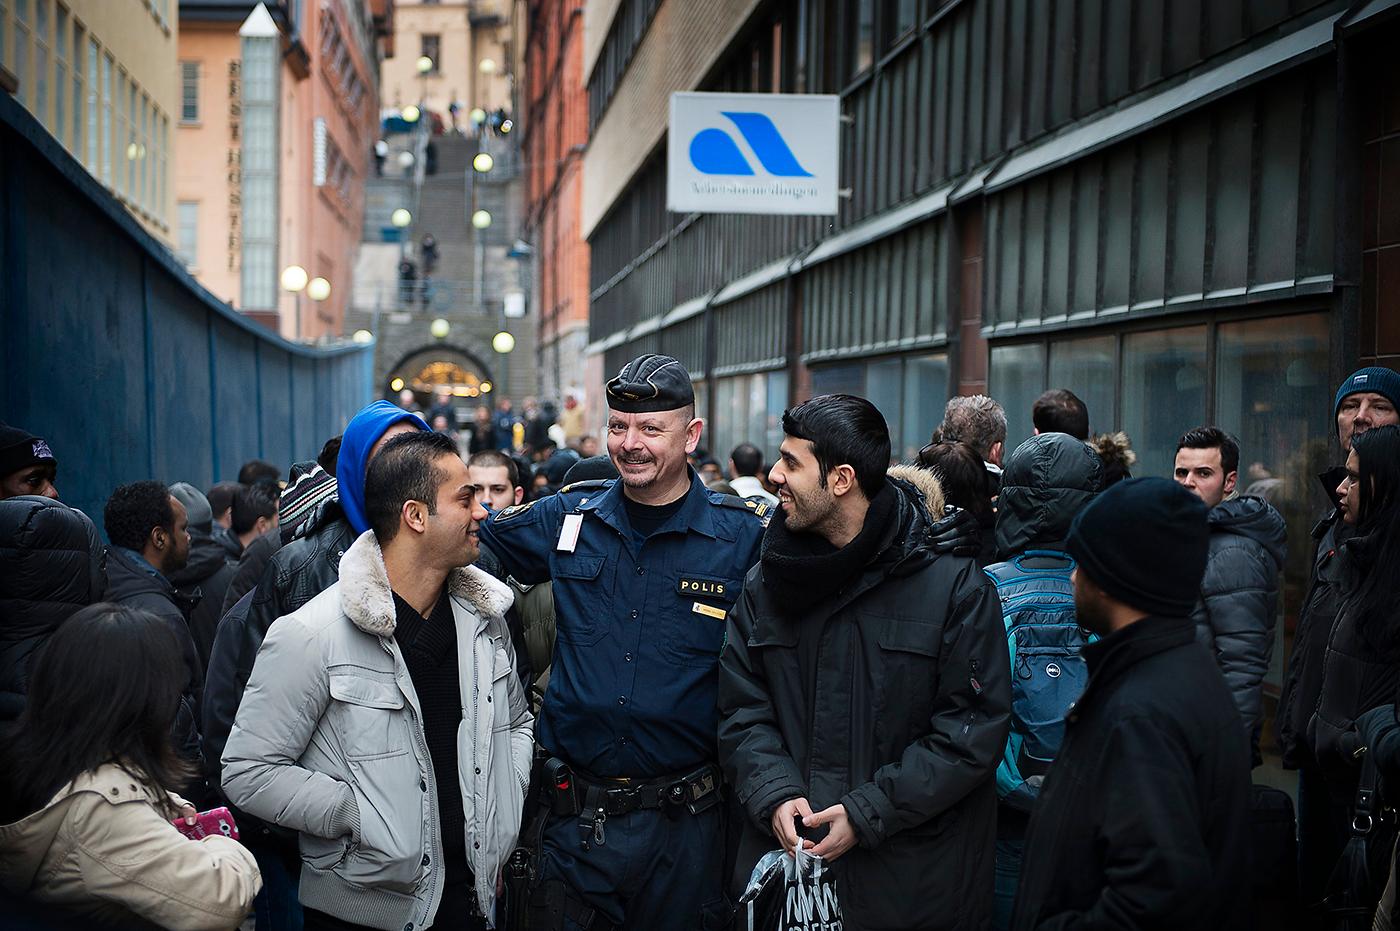 MASSINBJUDAN Just nu står 433 100 människor utan arbete i Sverige. Den här bilden togs när Arbetsförmedlingen av misstag råkade bjuda in alla arbetslösa i Stockholm, 61 000 personer (14% av Sveriges arbetslösa), till en rekryteringsmässa.